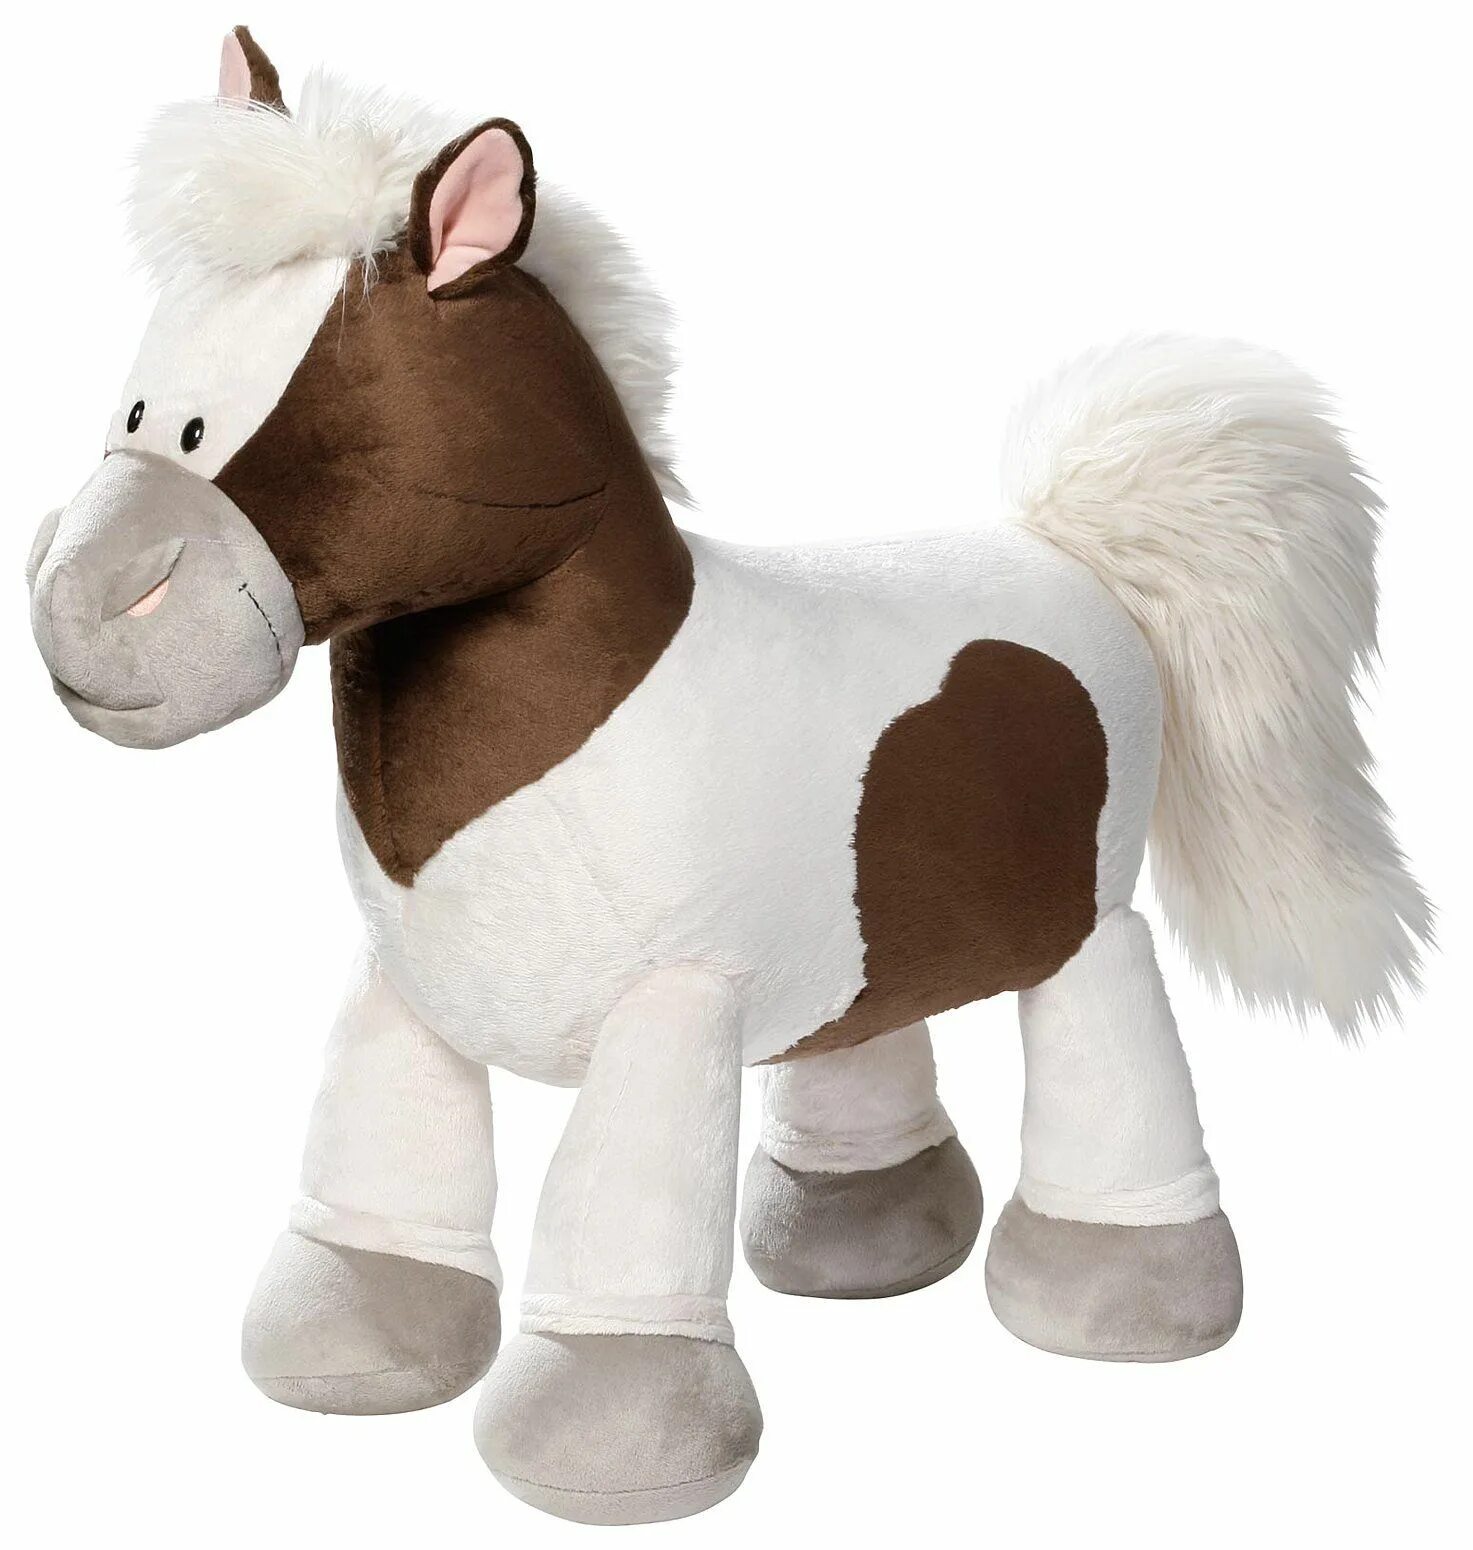 Nici мягкая игрушка лошадка Даймонд. Nici пони Пунита. Мягкая игрушка nici лошадка Даймонд сидячая 25см. Лошадка "вельвет", сидячая, коричневая, 25 см. Игрушка конь купить